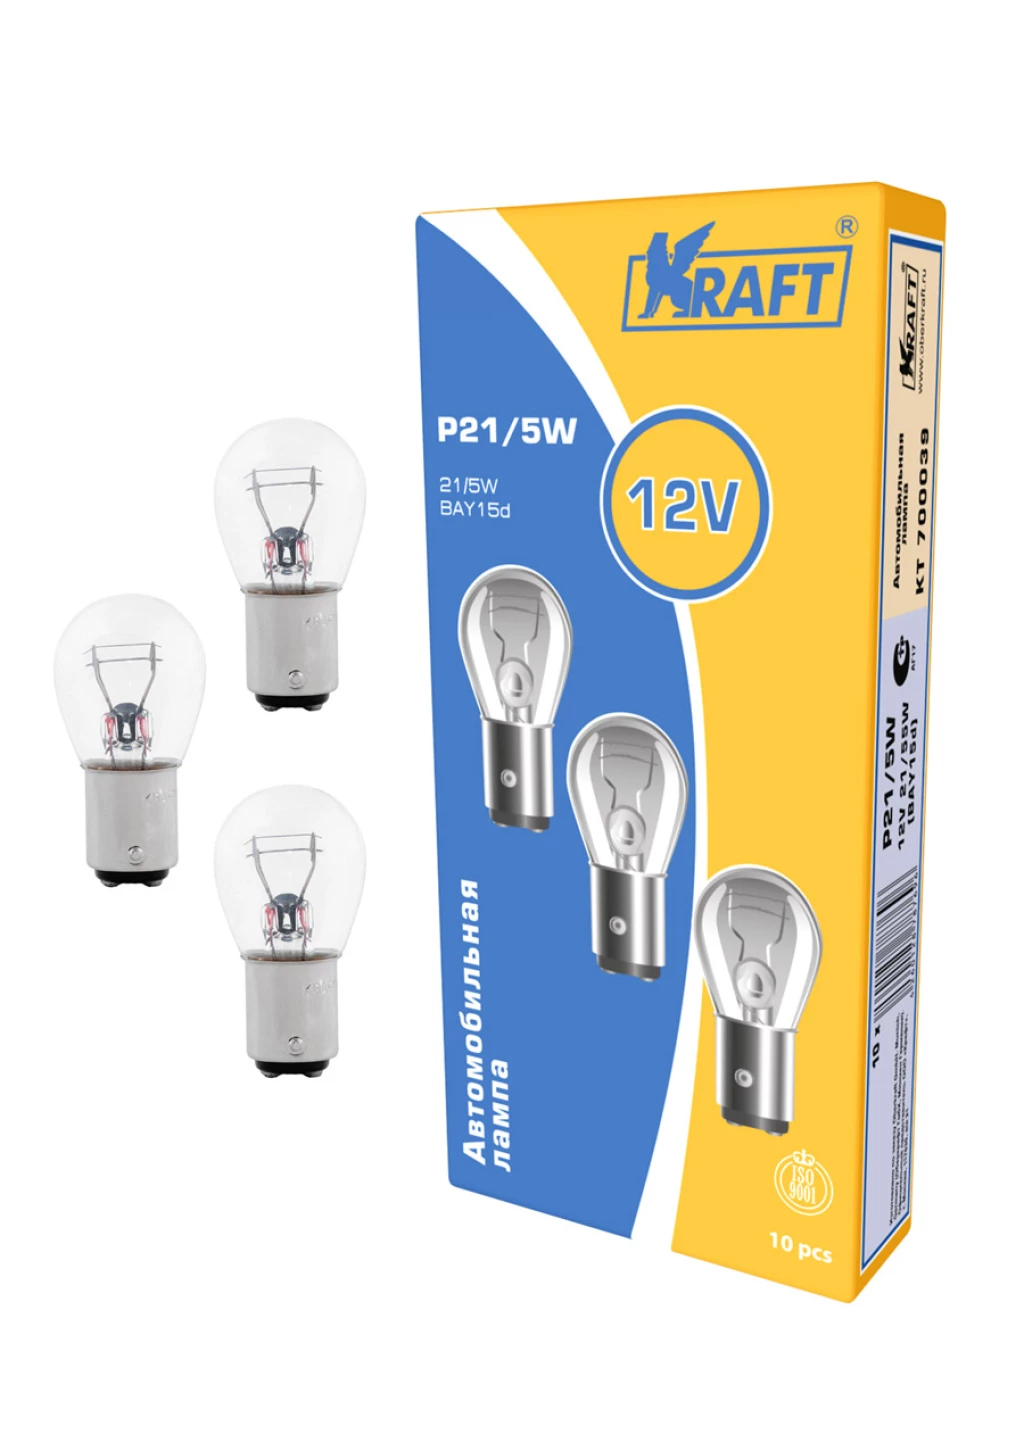 Лампа галогенная Kraft P21|5W 12V 21|5W, KT 700039, 1 шт